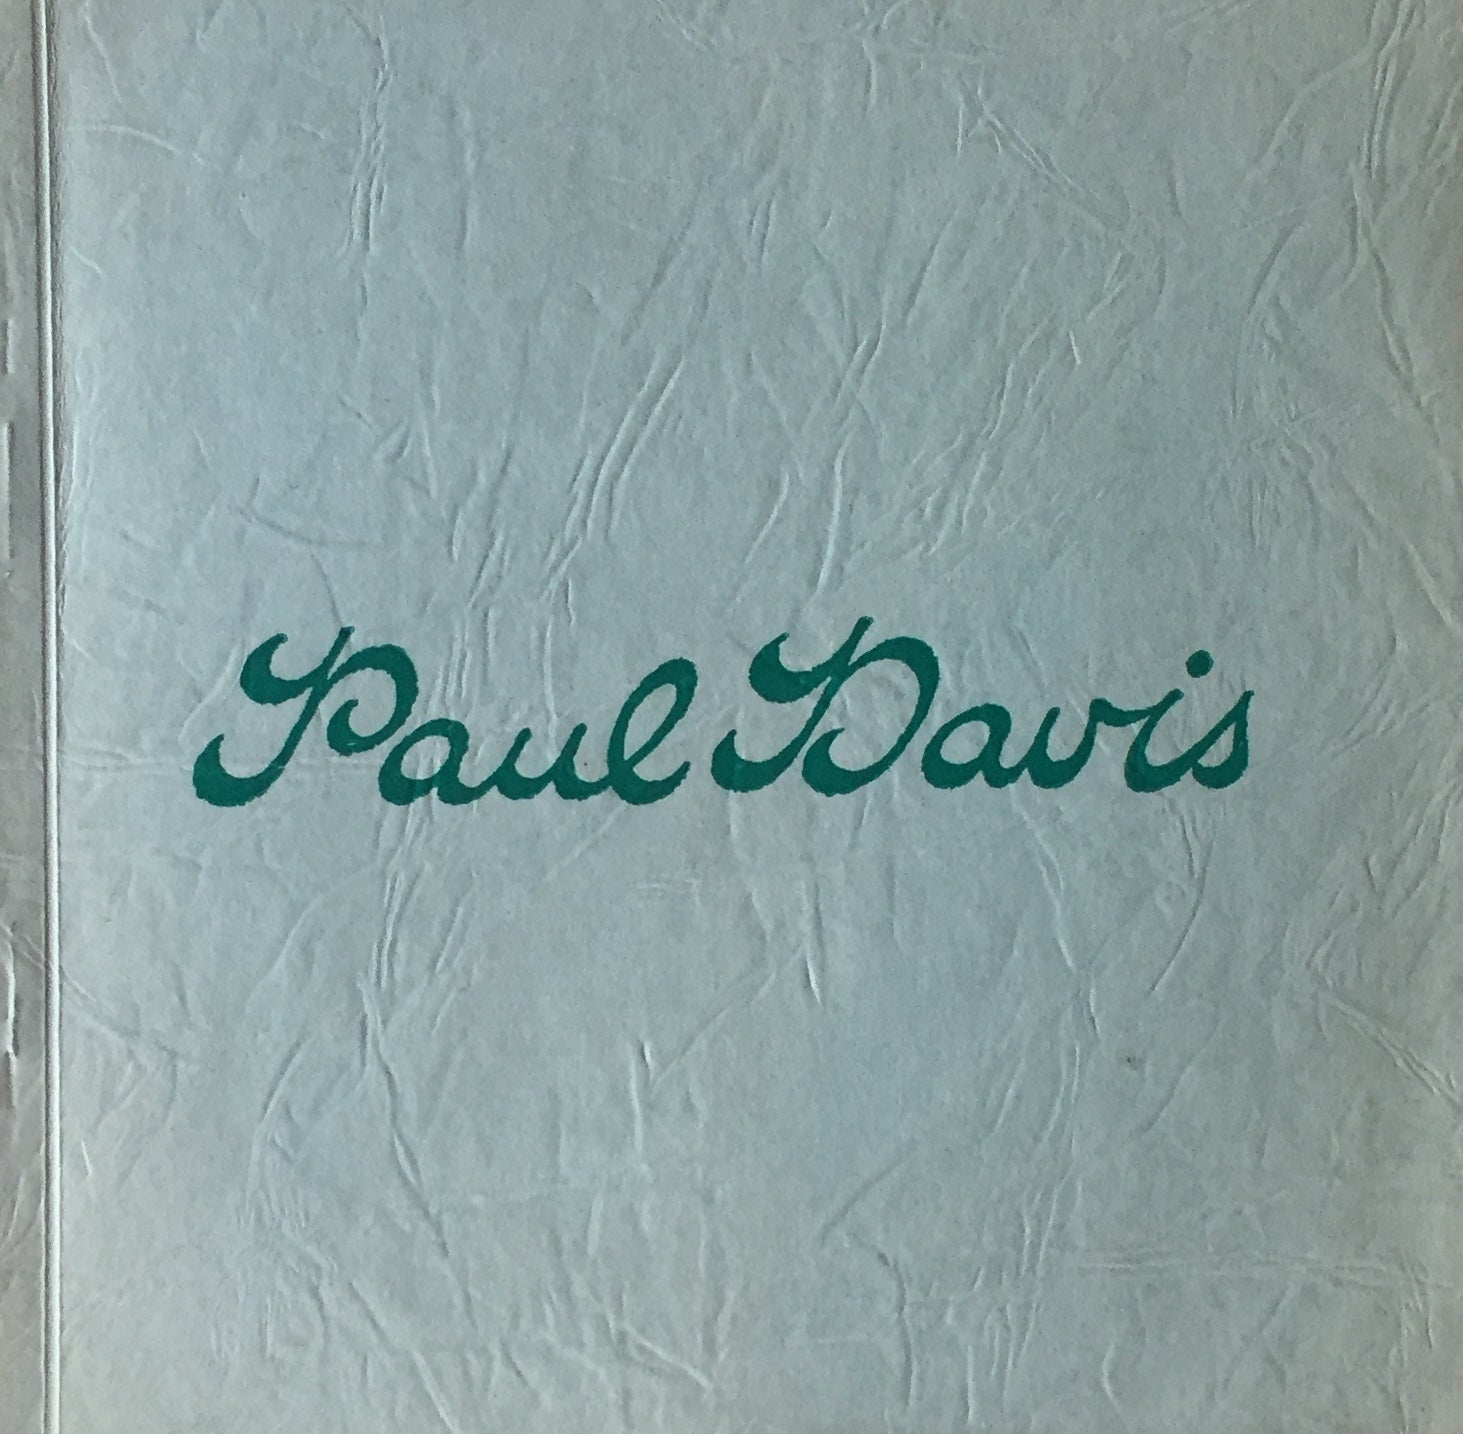 ポールデービス 原画「Henri」2000年 Paul Davis - 美術品